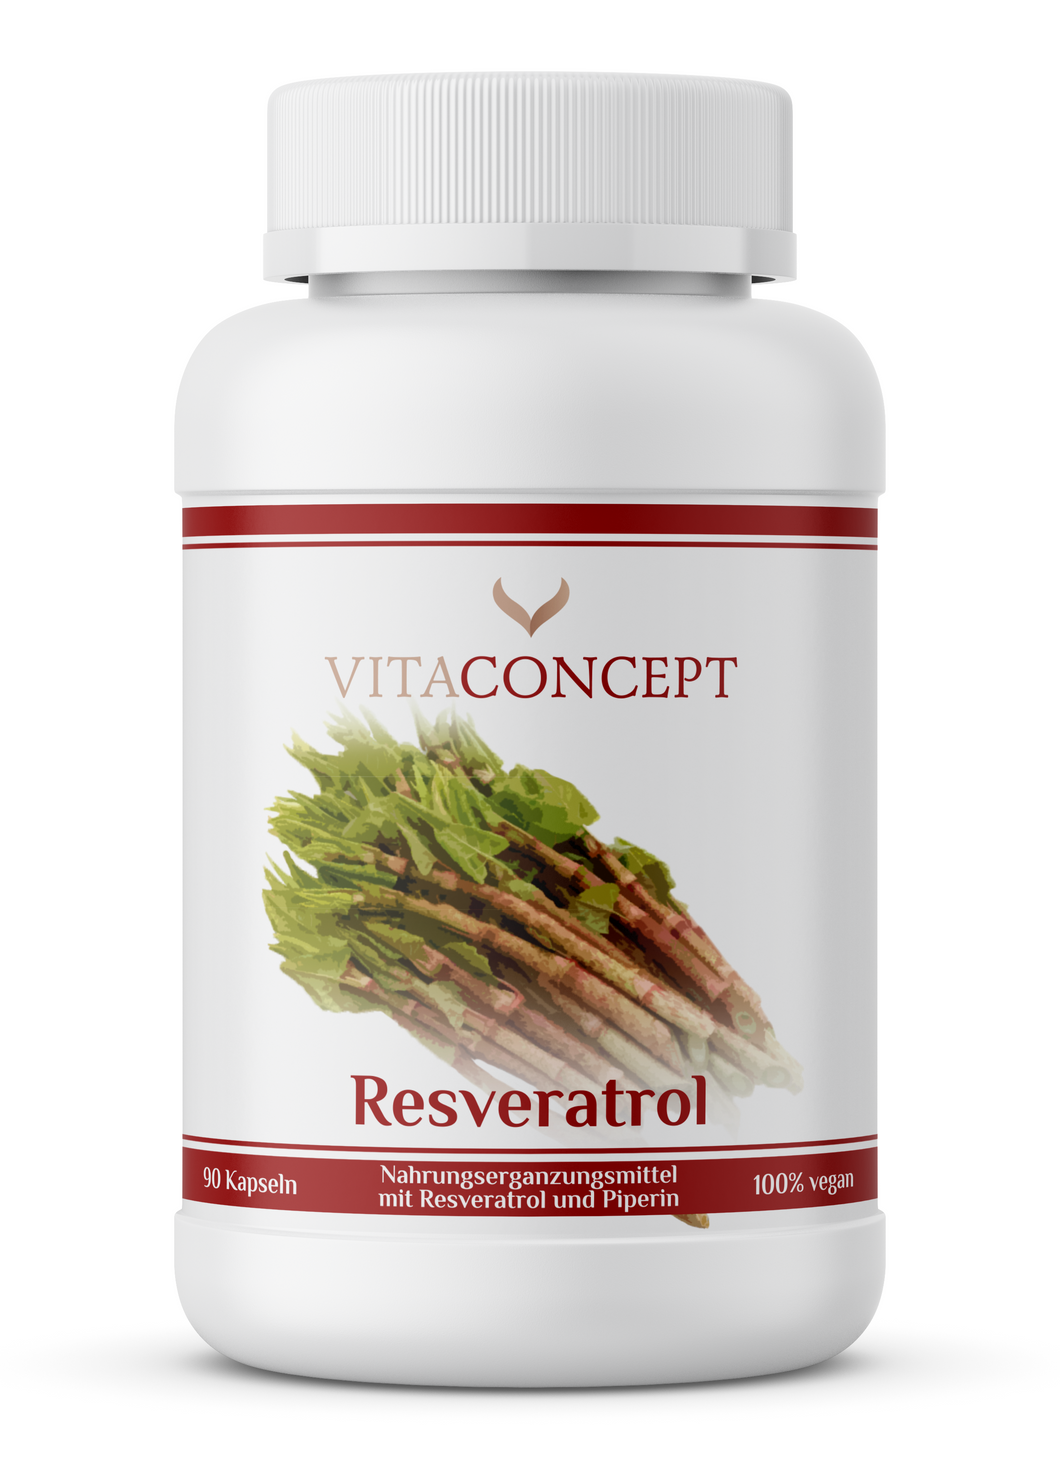 Resveratrol - Nahrungsergänzungsmittel mit Resveratrol und Piperin